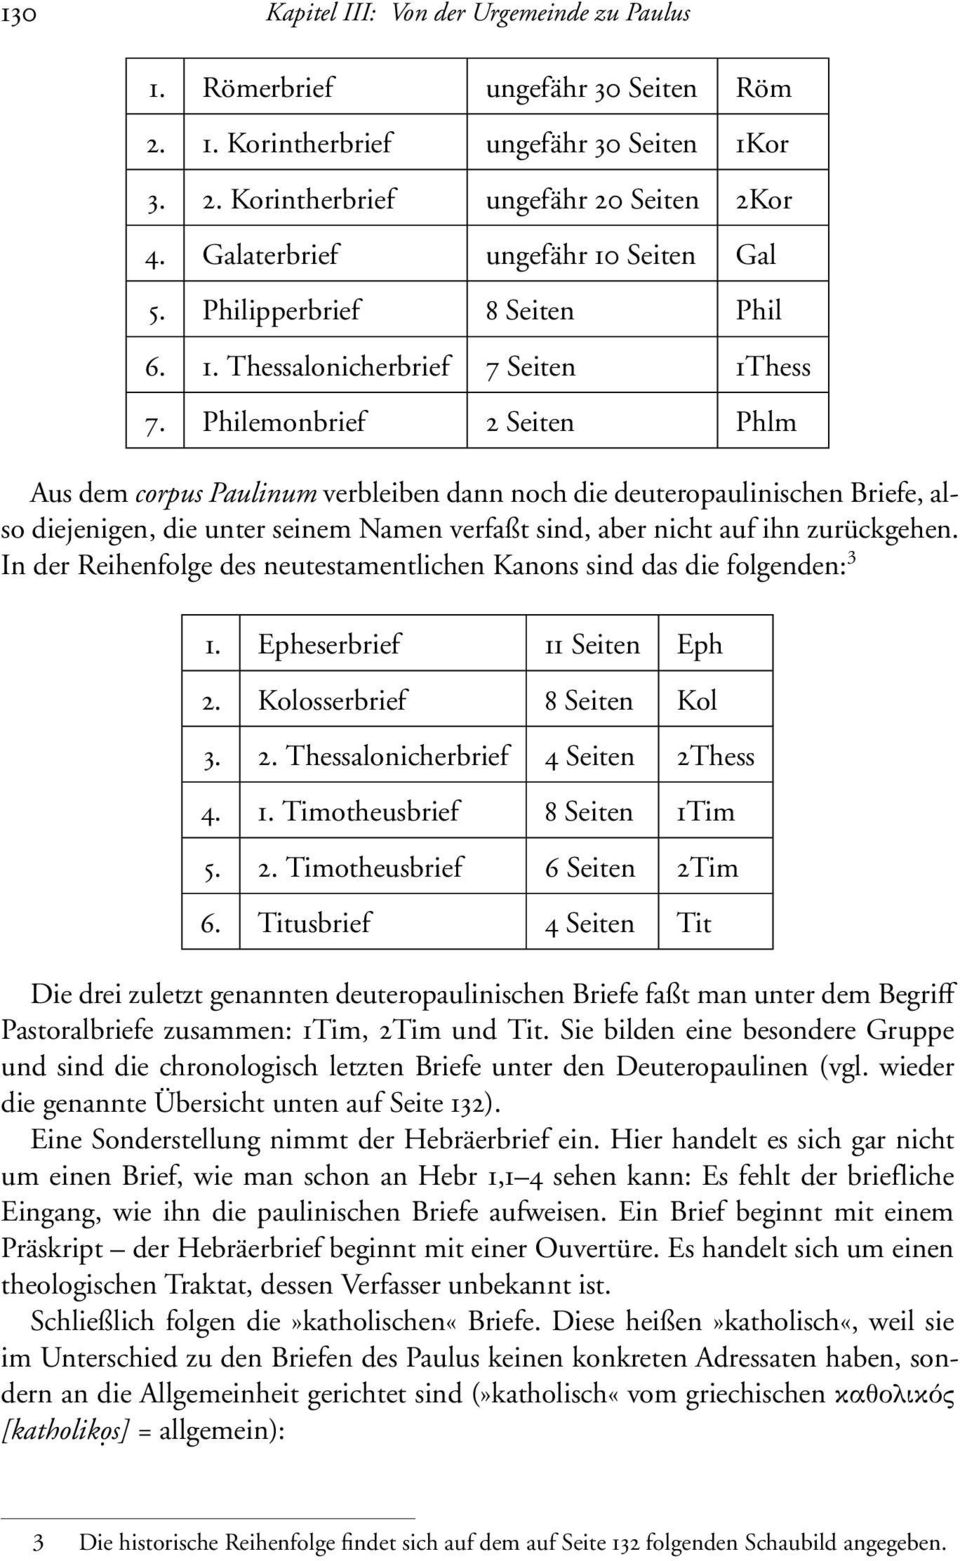 18 Die Schriften Des Neuen Testaments Im Uberblick Pdf Kostenfreier Download